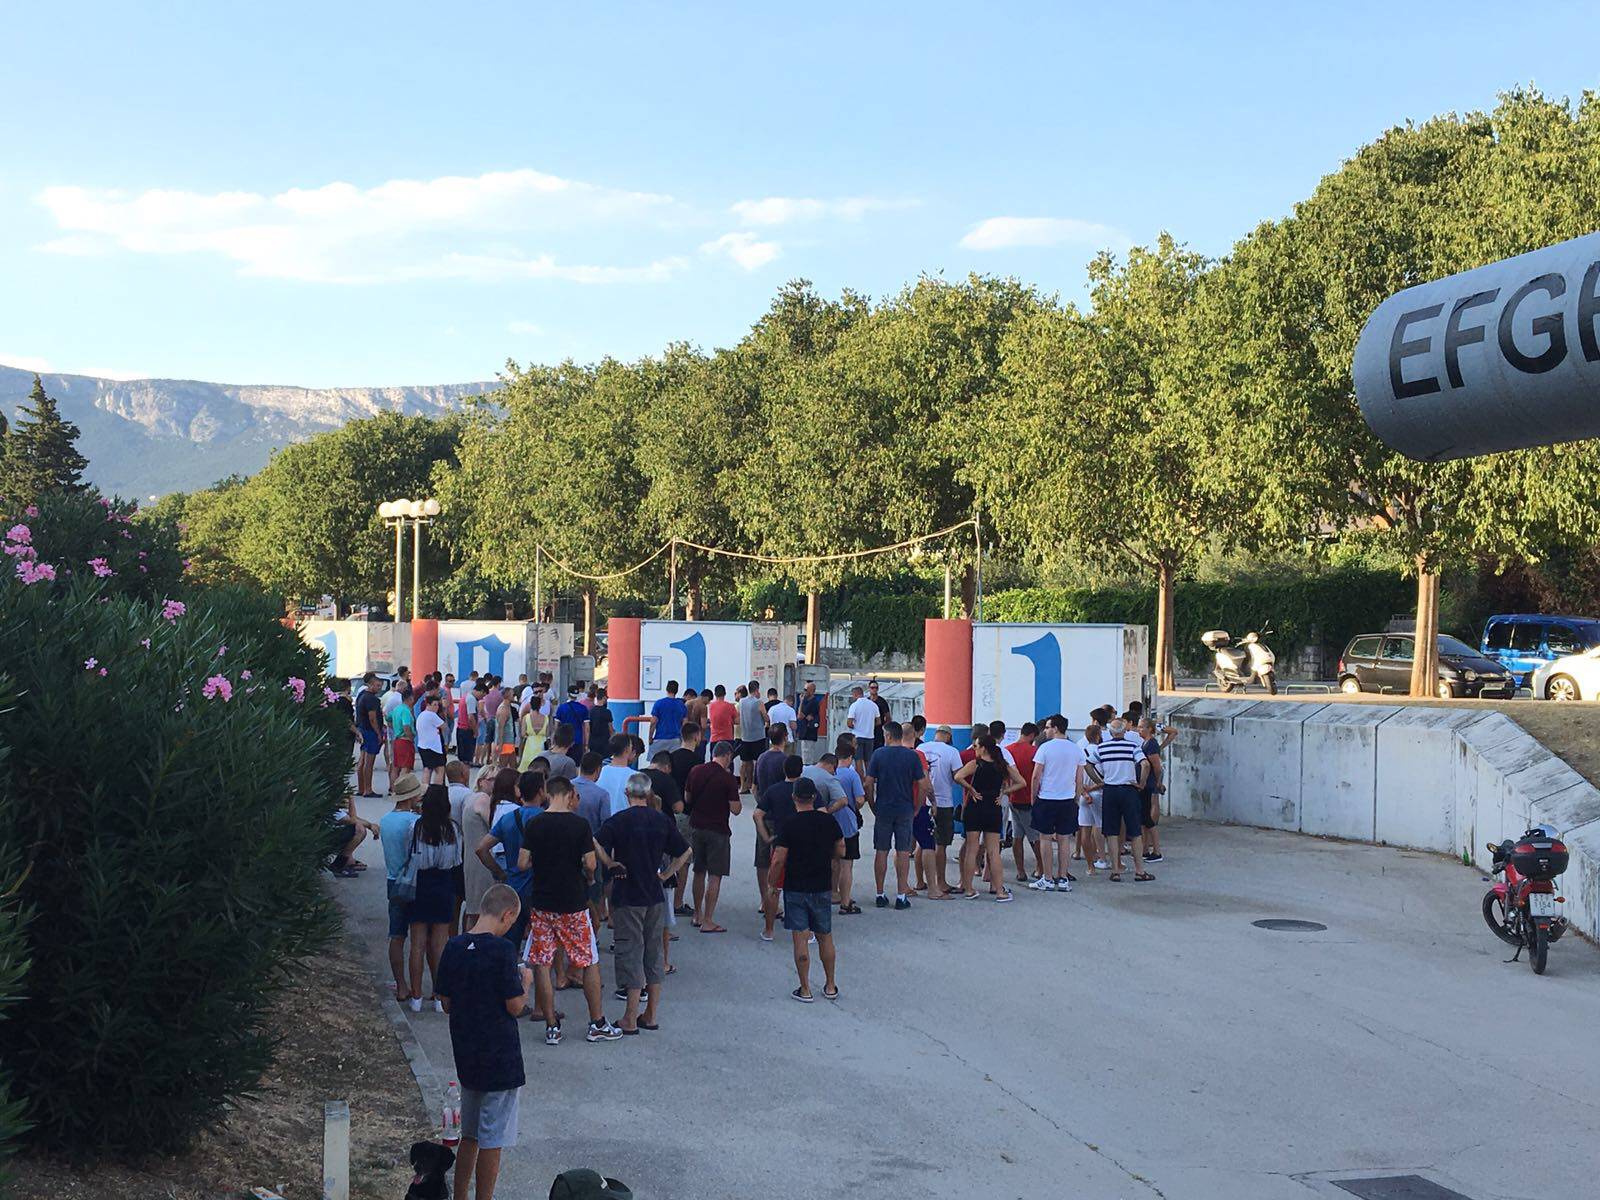 Hajdukovci navalili po ulaznice, Kos moli navijače da pripaze...